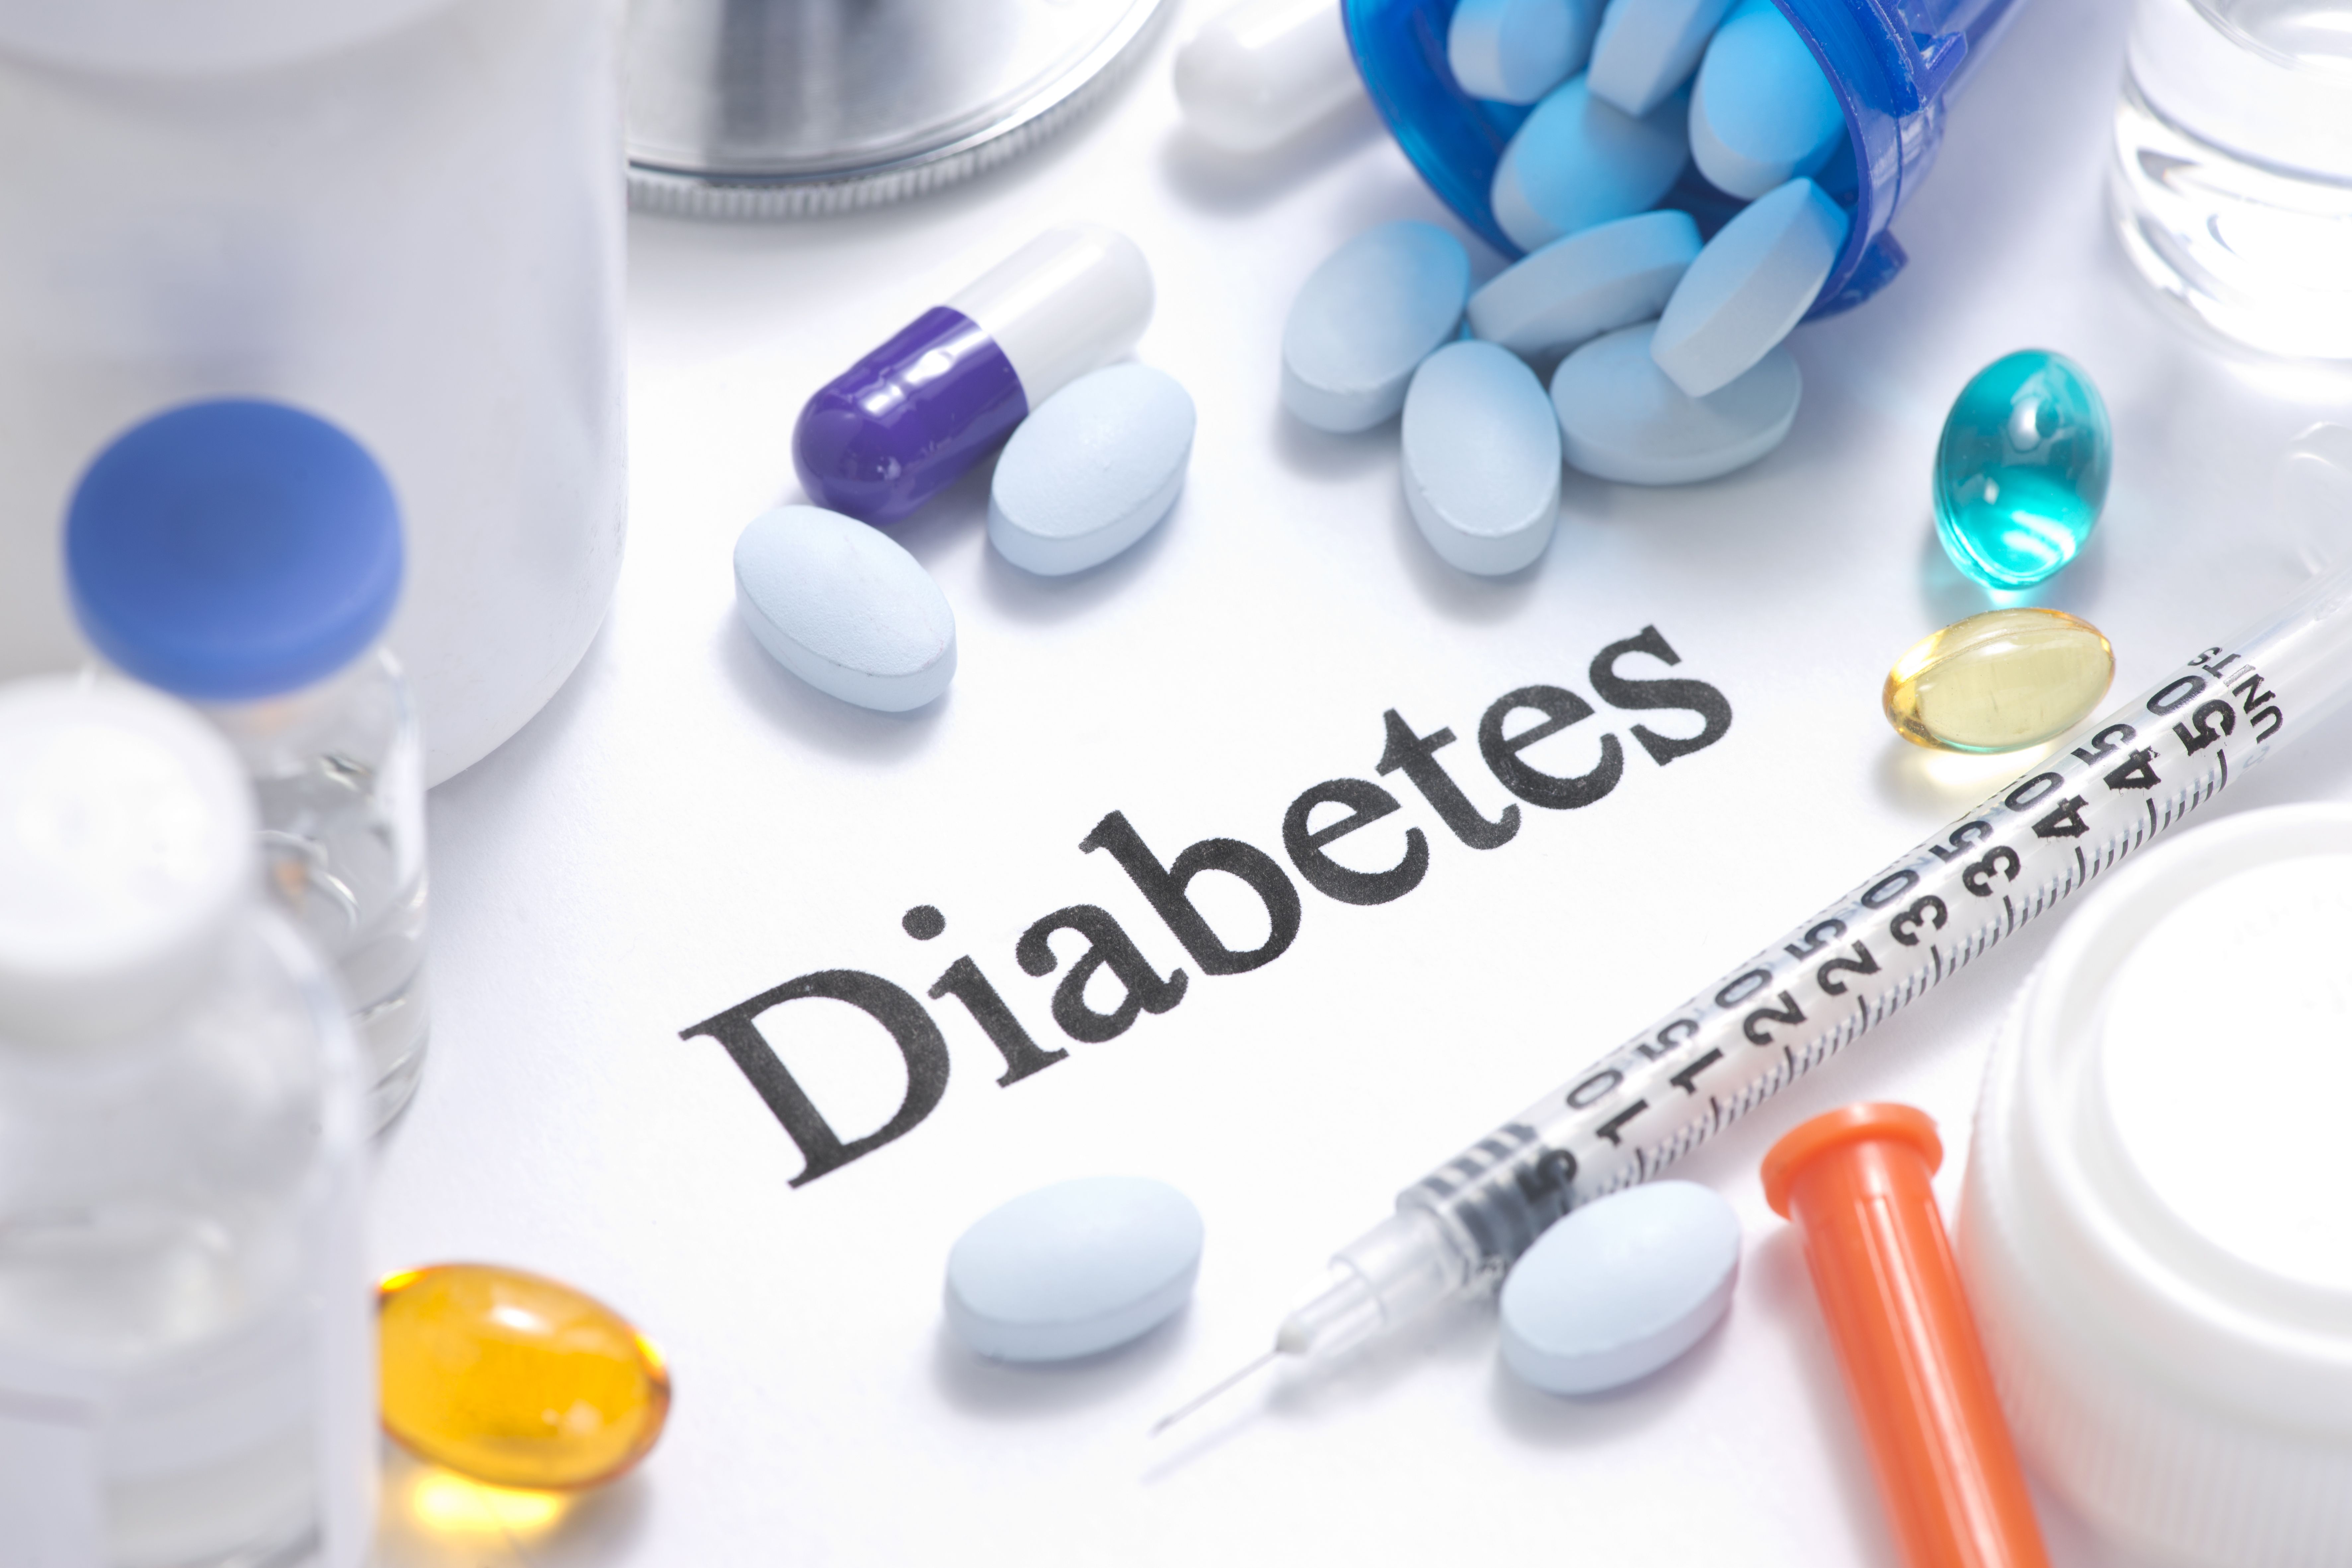 El estudio encontró que 1 de cada 4 personas con diabetes en los Estados Unidos logran los objetivos del tratamiento